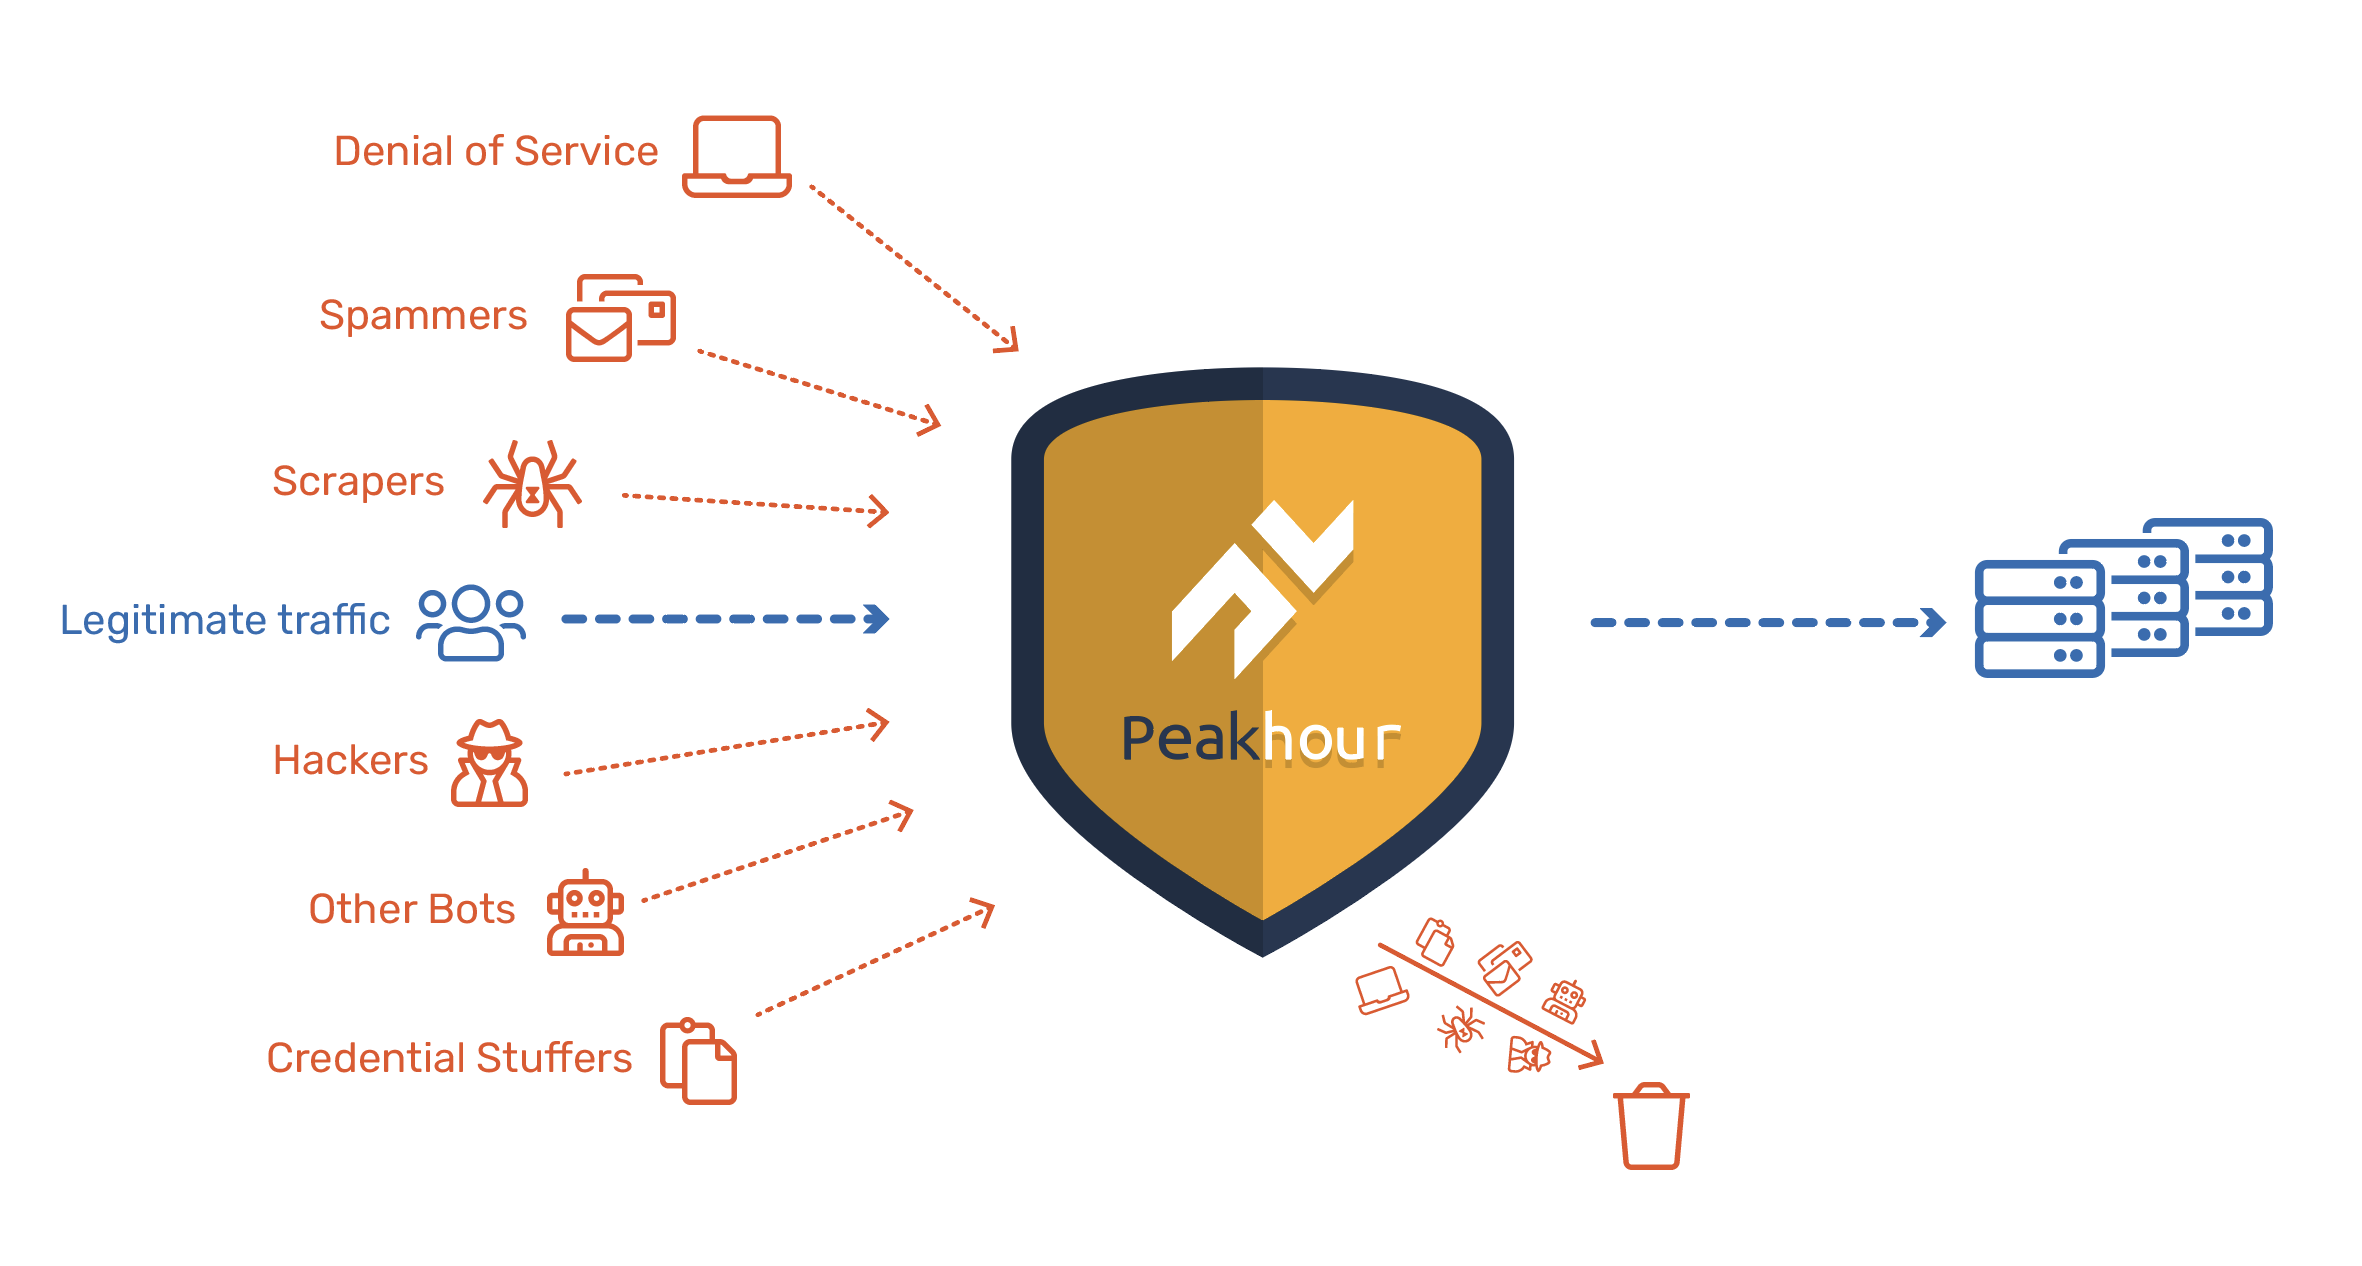 Peakhour blocks threats